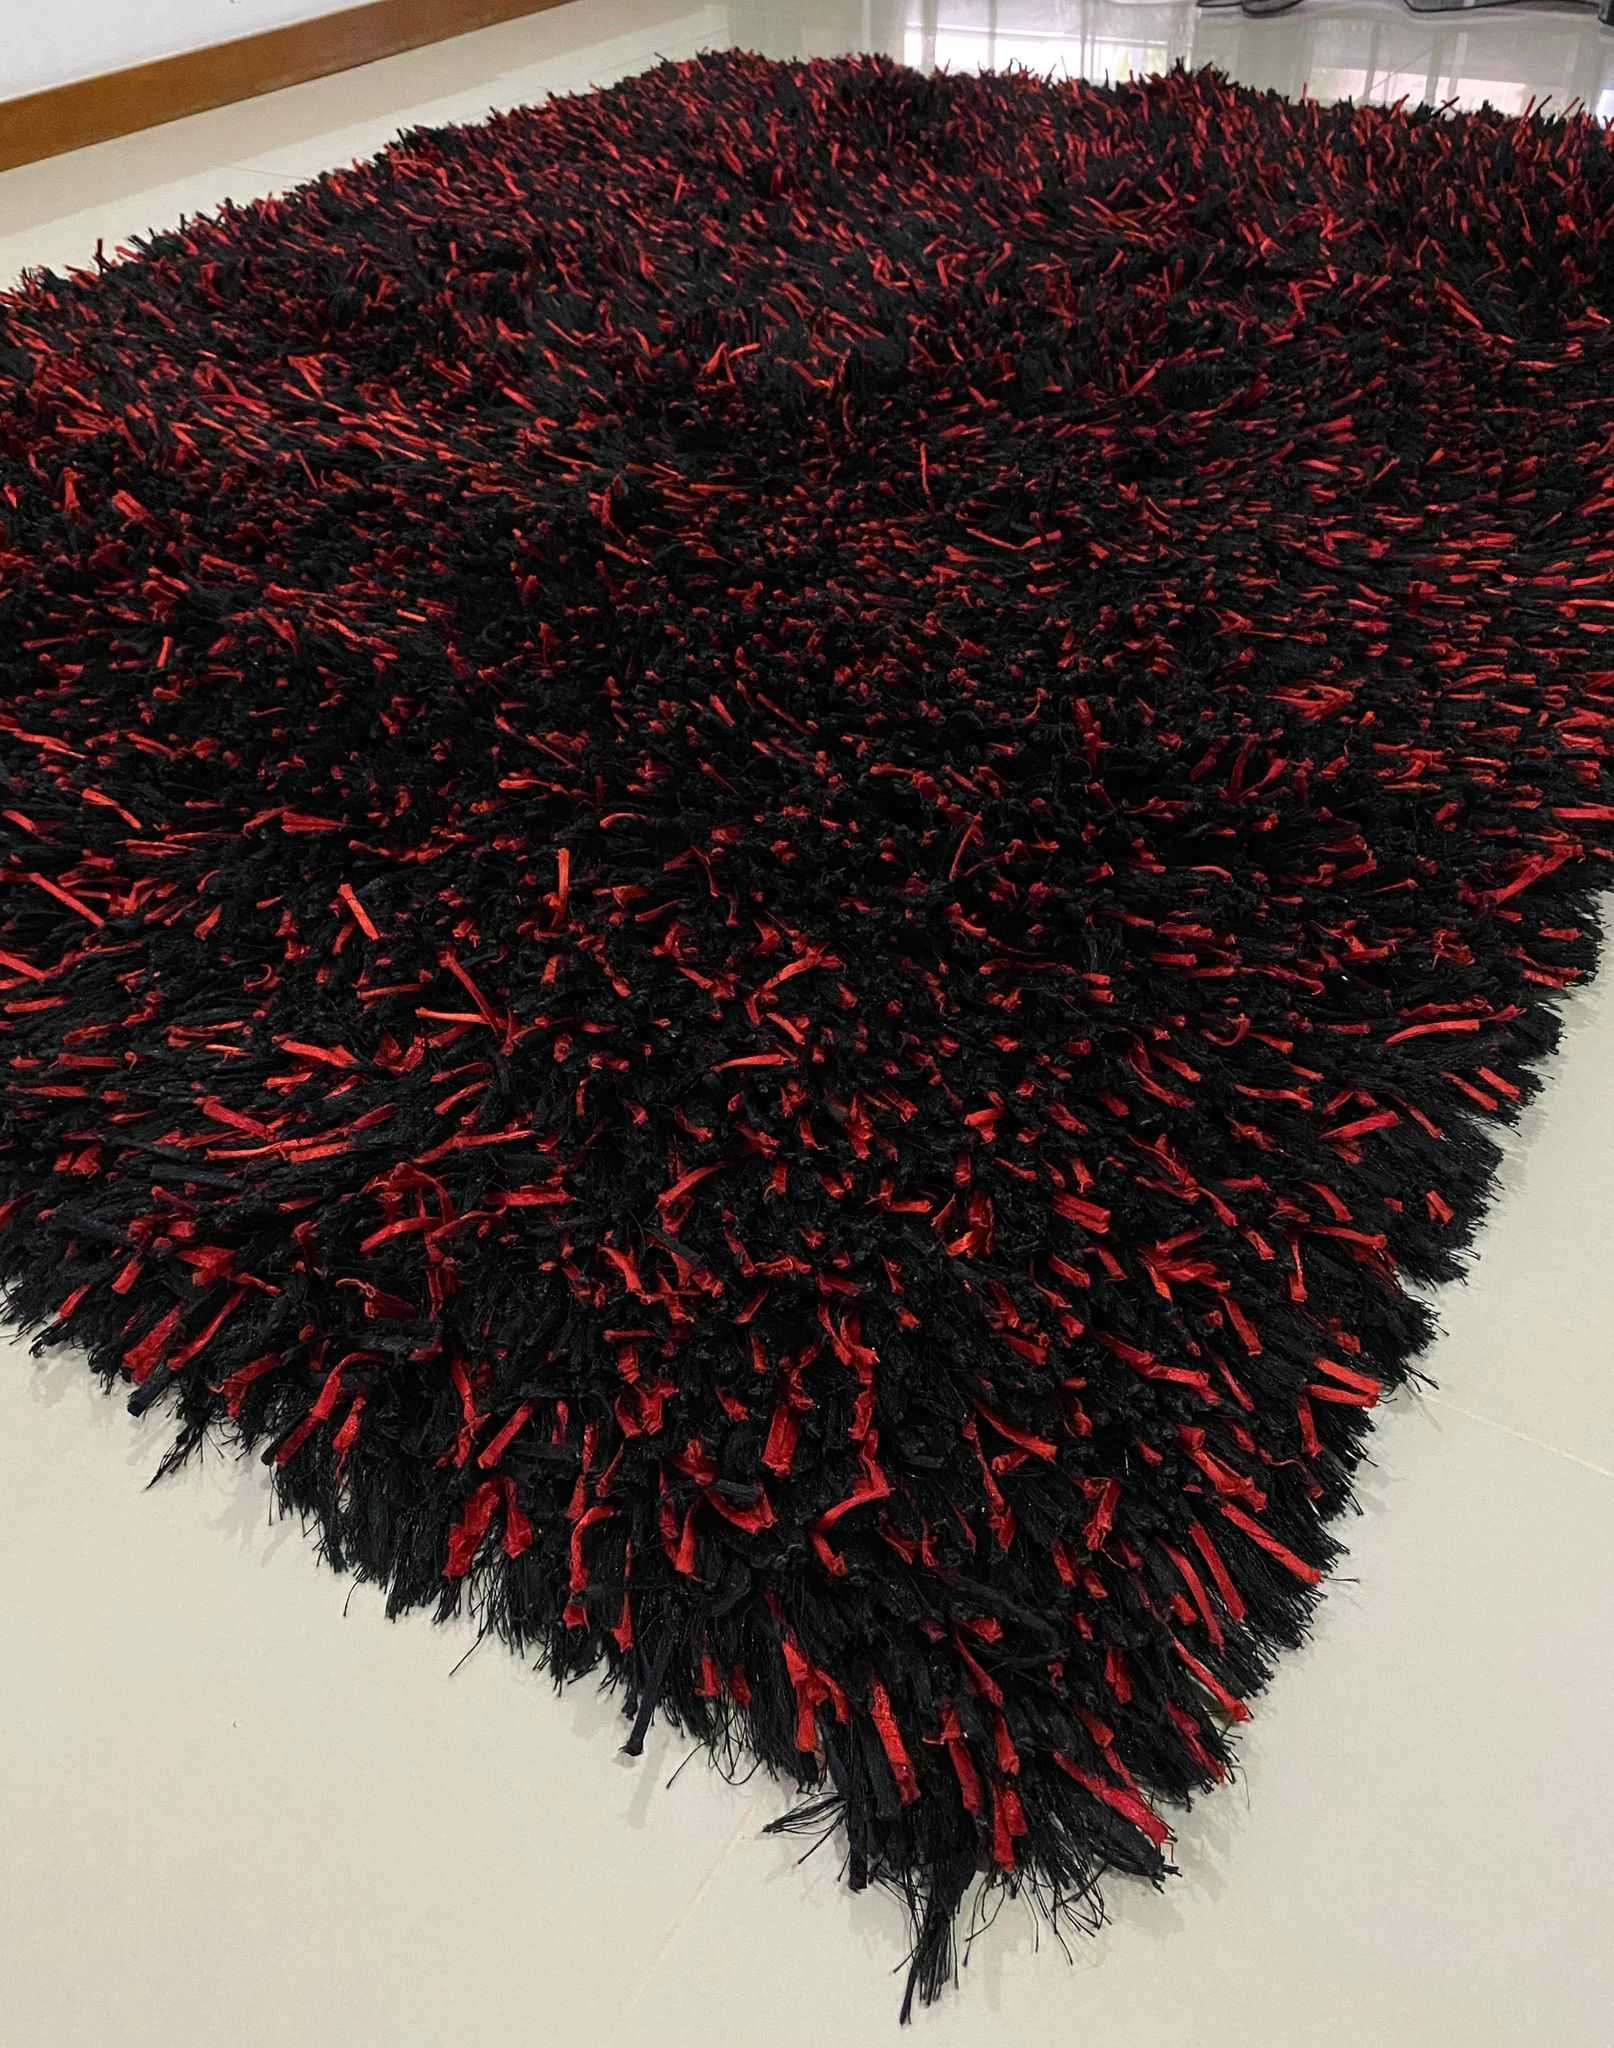 Carpete preta e vermelha pelo alto